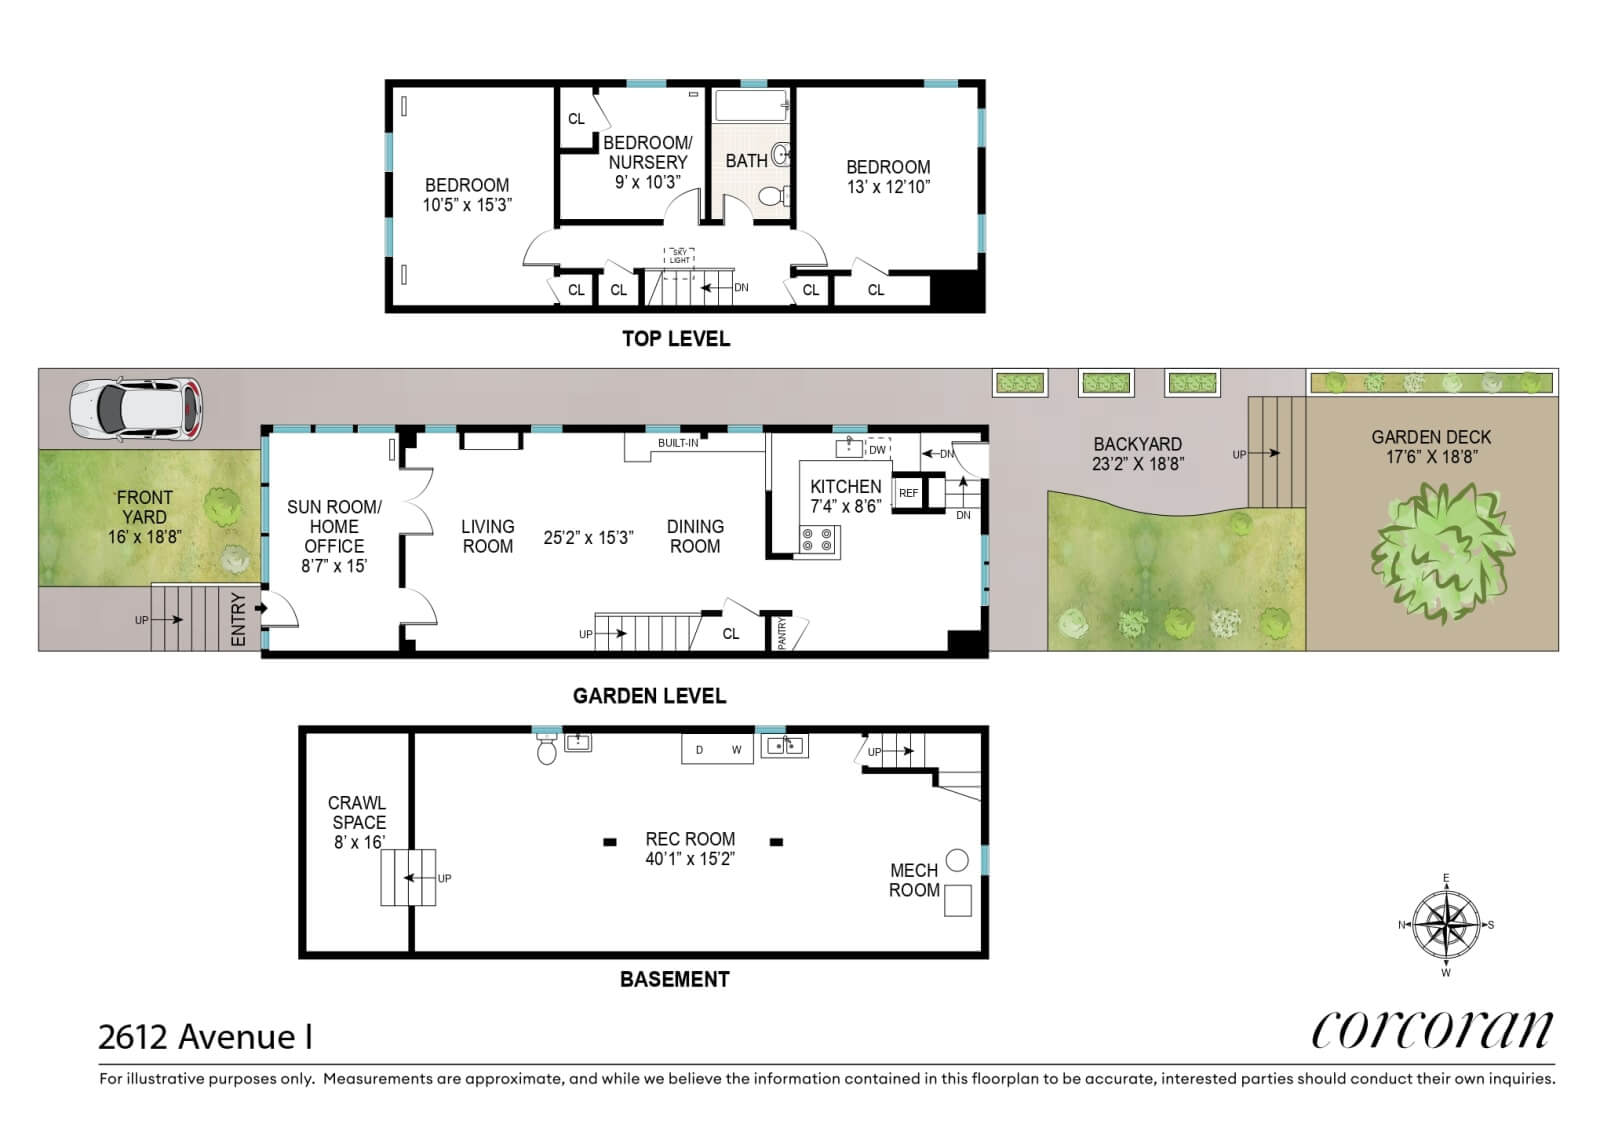 floor plan of 2612 avenue I in midwood